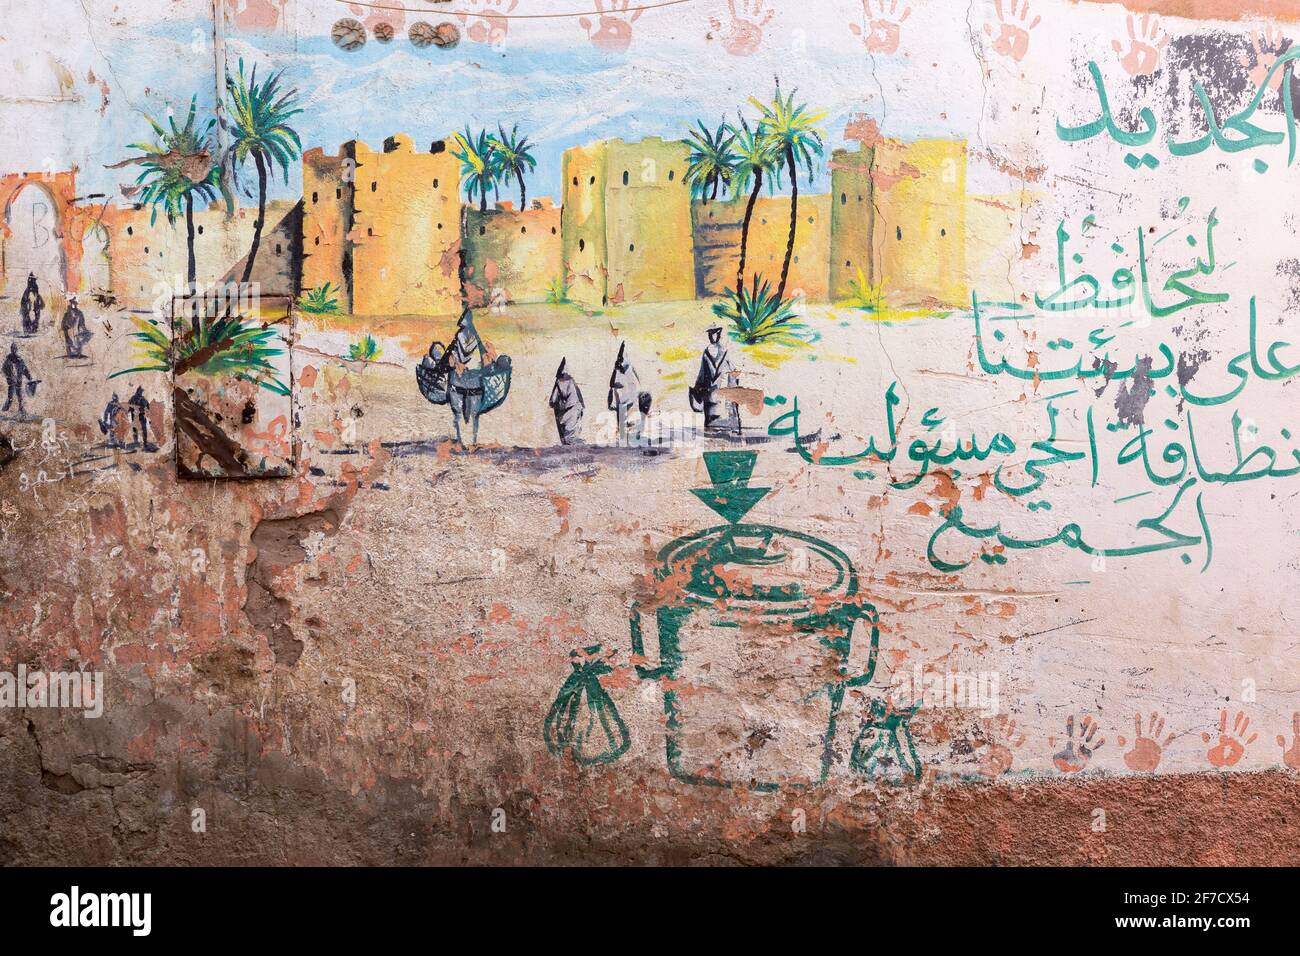 Peinture sur un mur dans la médina de Marrakech, Maroc Banque D'Images